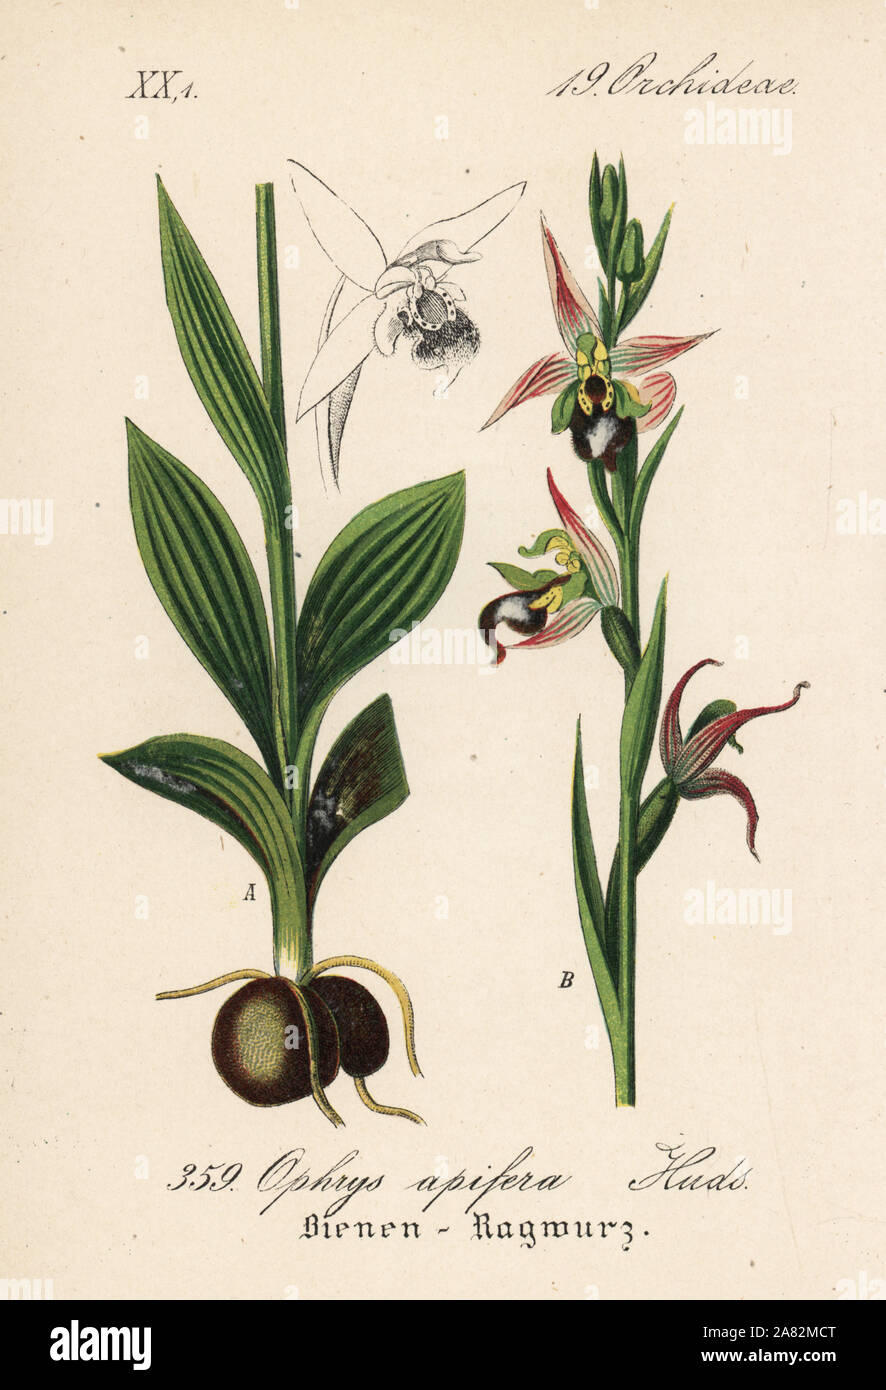 Bienen-ragwurz, Ophrys apifera. Papierkörbe Lithographie von Diederich von Schlechtendal der Deutschen Flora (Flora von Deutschland), Jena, 1871. Stockfoto